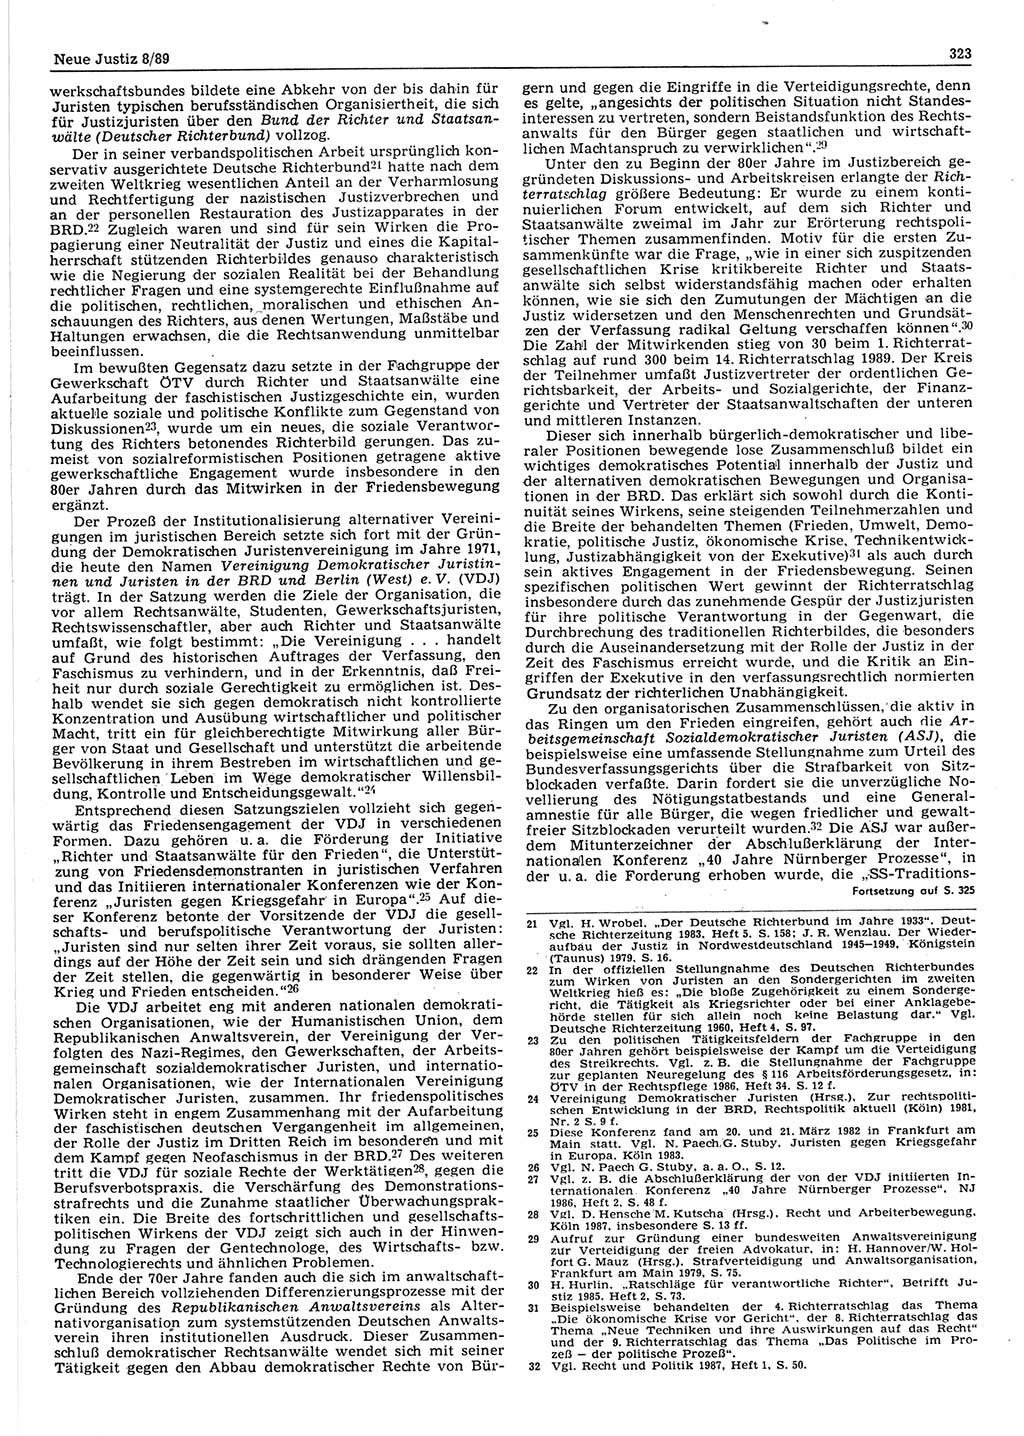 Neue Justiz (NJ), Zeitschrift für sozialistisches Recht und Gesetzlichkeit [Deutsche Demokratische Republik (DDR)], 43. Jahrgang 1989, Seite 323 (NJ DDR 1989, S. 323)